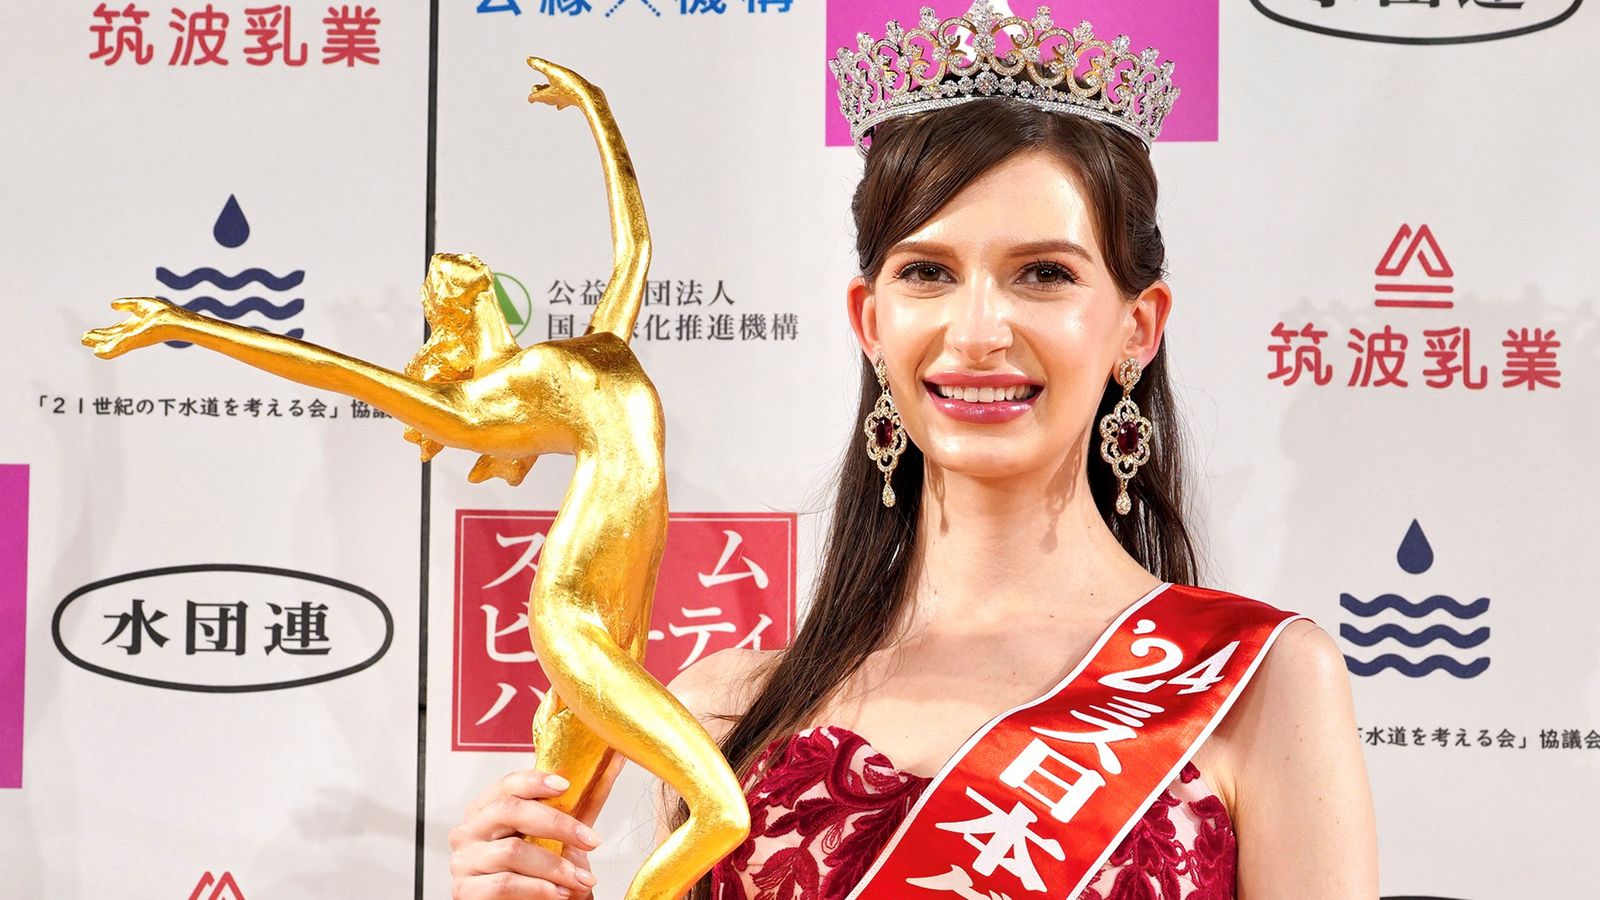 فضيحة تدفع ملكة جمال اليابان للتنازل عن لقبها